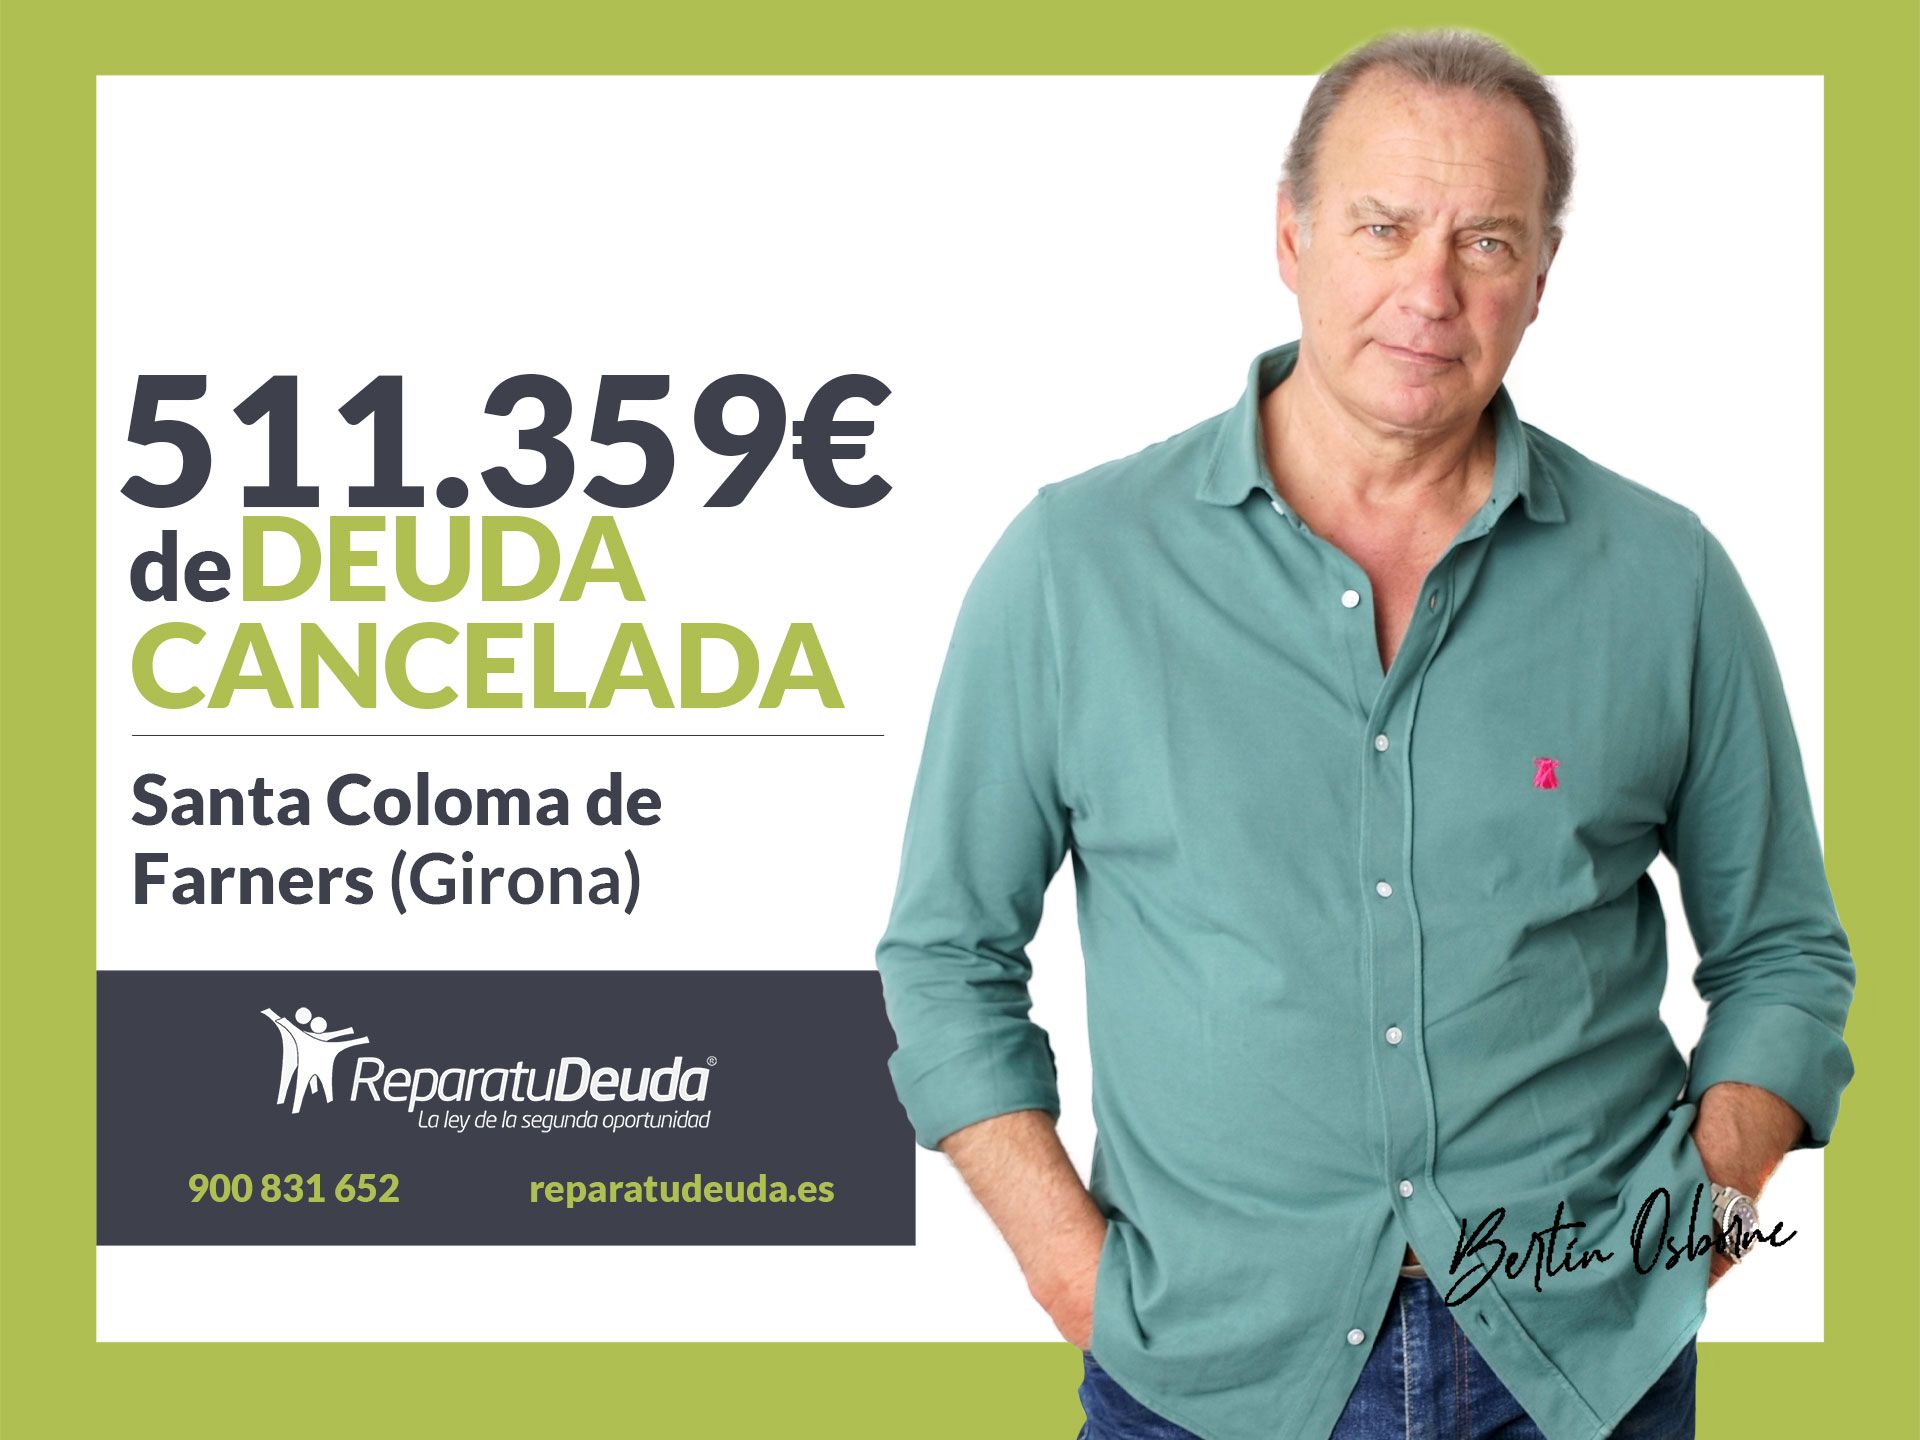 Repara tu Deuda cancela 511.359? en Santa Coloma de Farners (Girona) con la Ley de Segunda Oportunidad